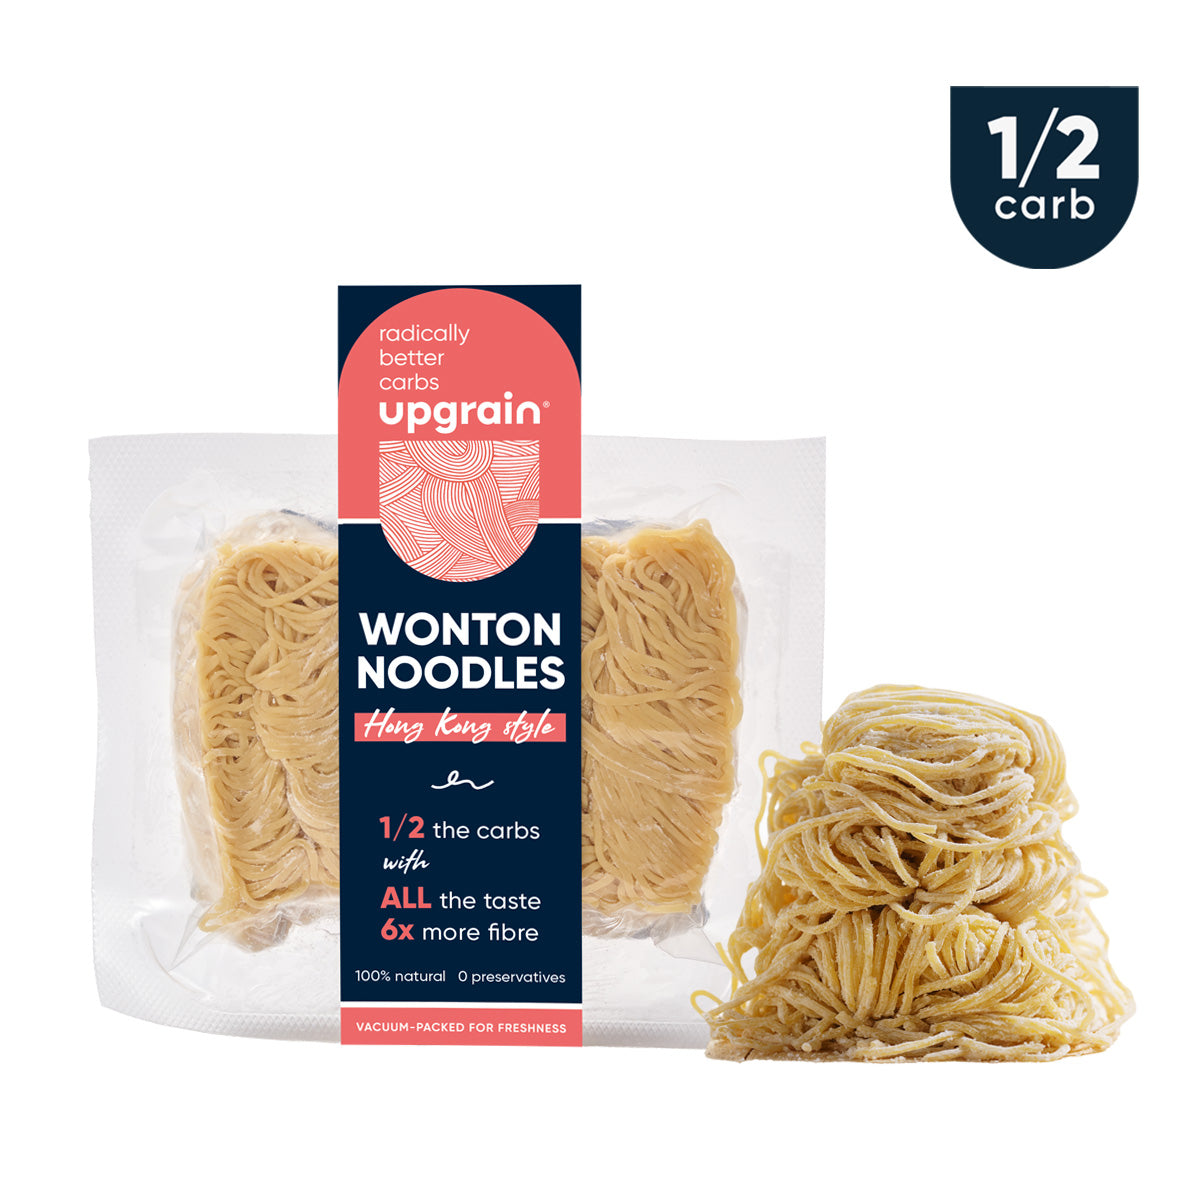 1/2-carb Wonton Noodles (Hong Kong style)